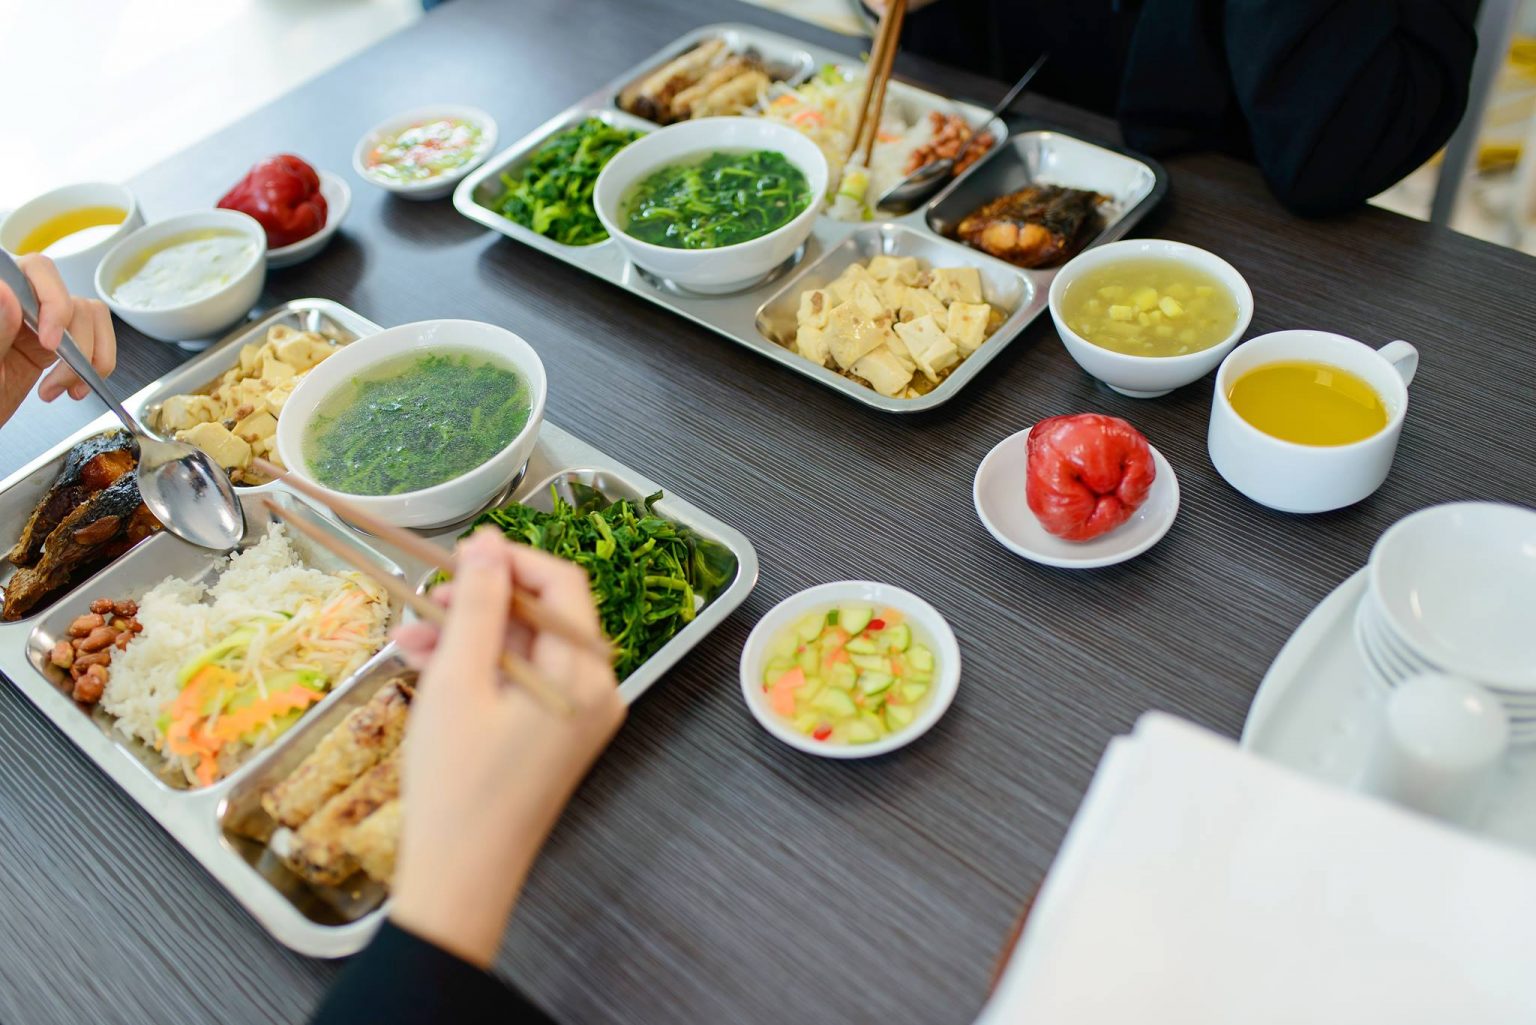 Suất ăn công nhân - Suất Ăn Công Nghiệp Bảo Châu - Công Ty TNHH MTV Dịch Vụ Suất Ăn Bảo Châu